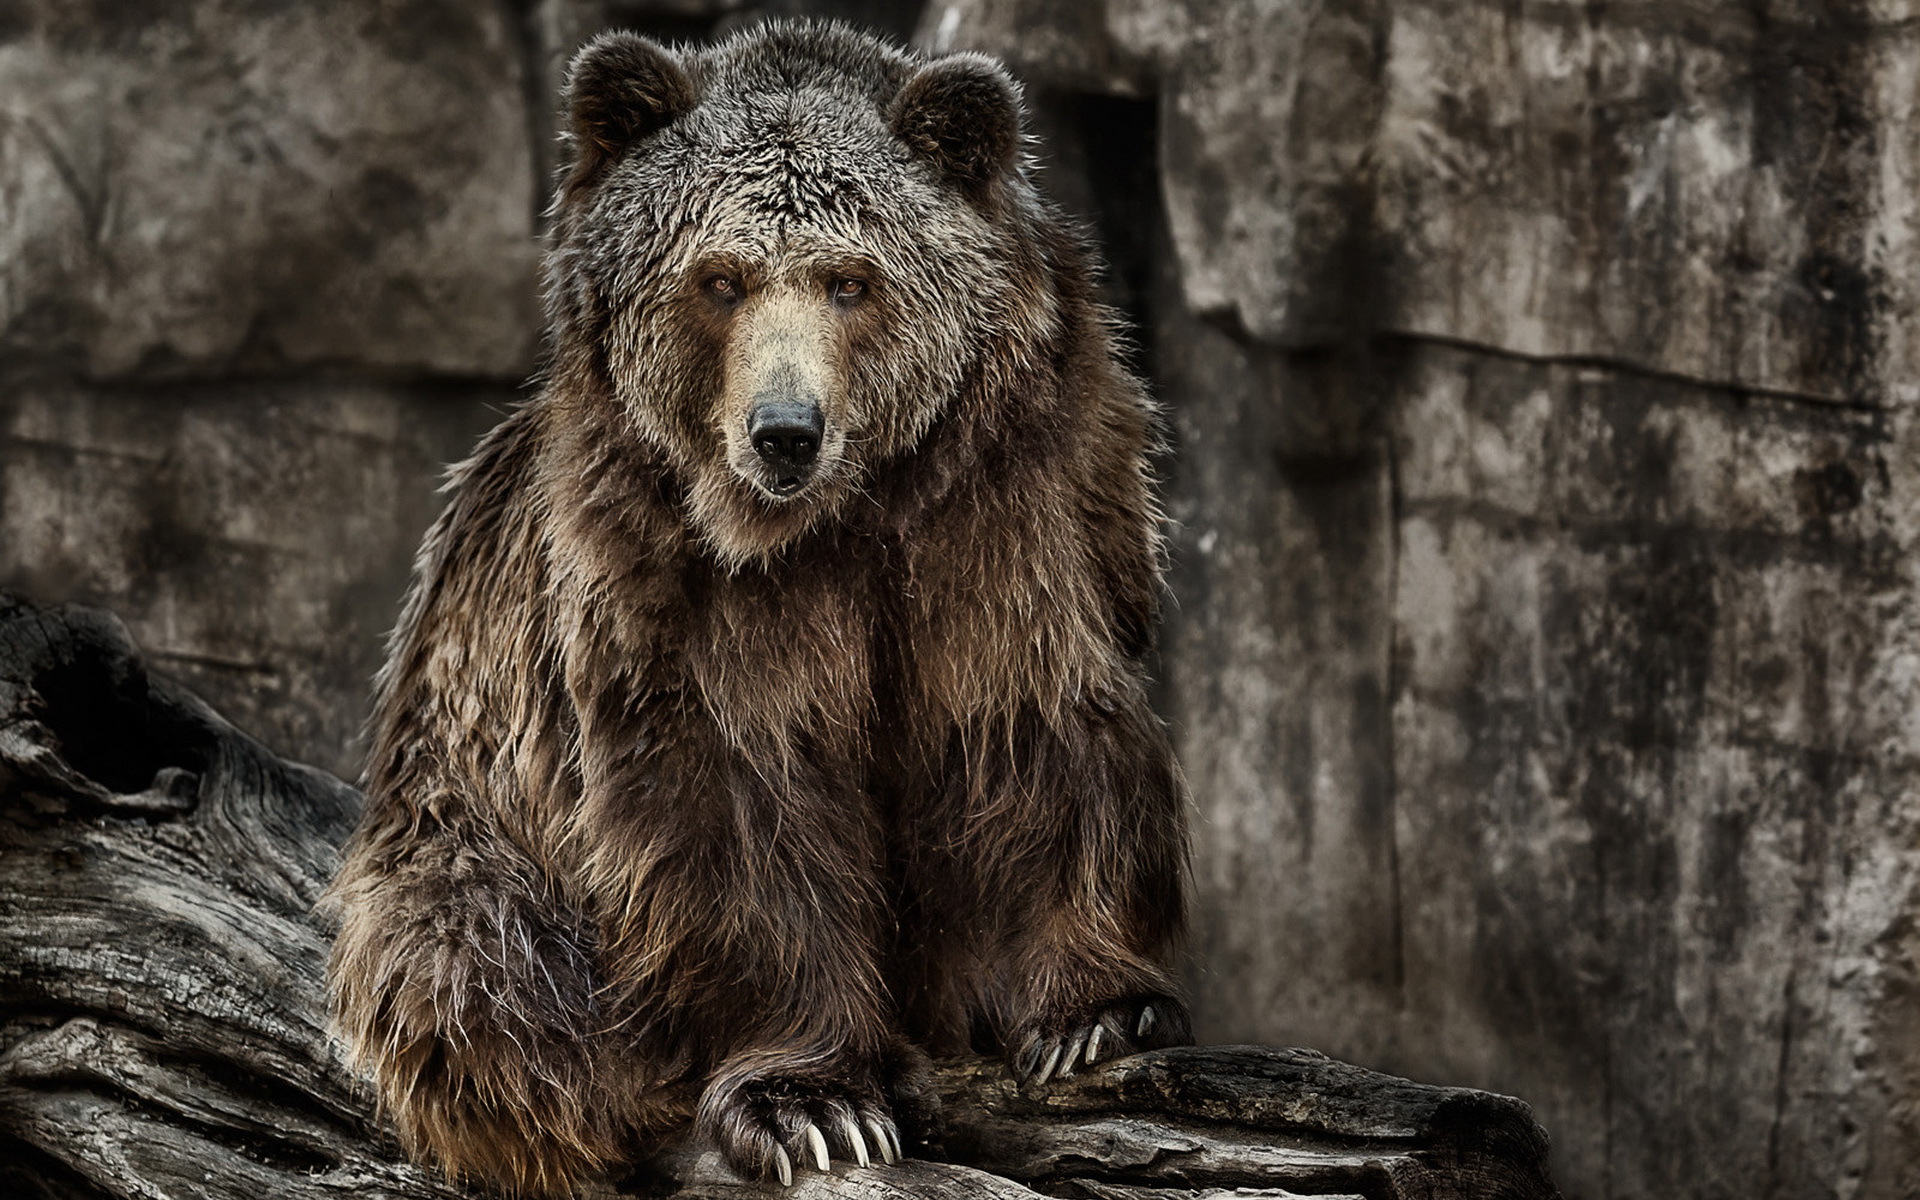 Скачать обои бесплатно Животные, Медведи, Медведь, Зоопарк, Глазеть картинка на рабочий стол ПК